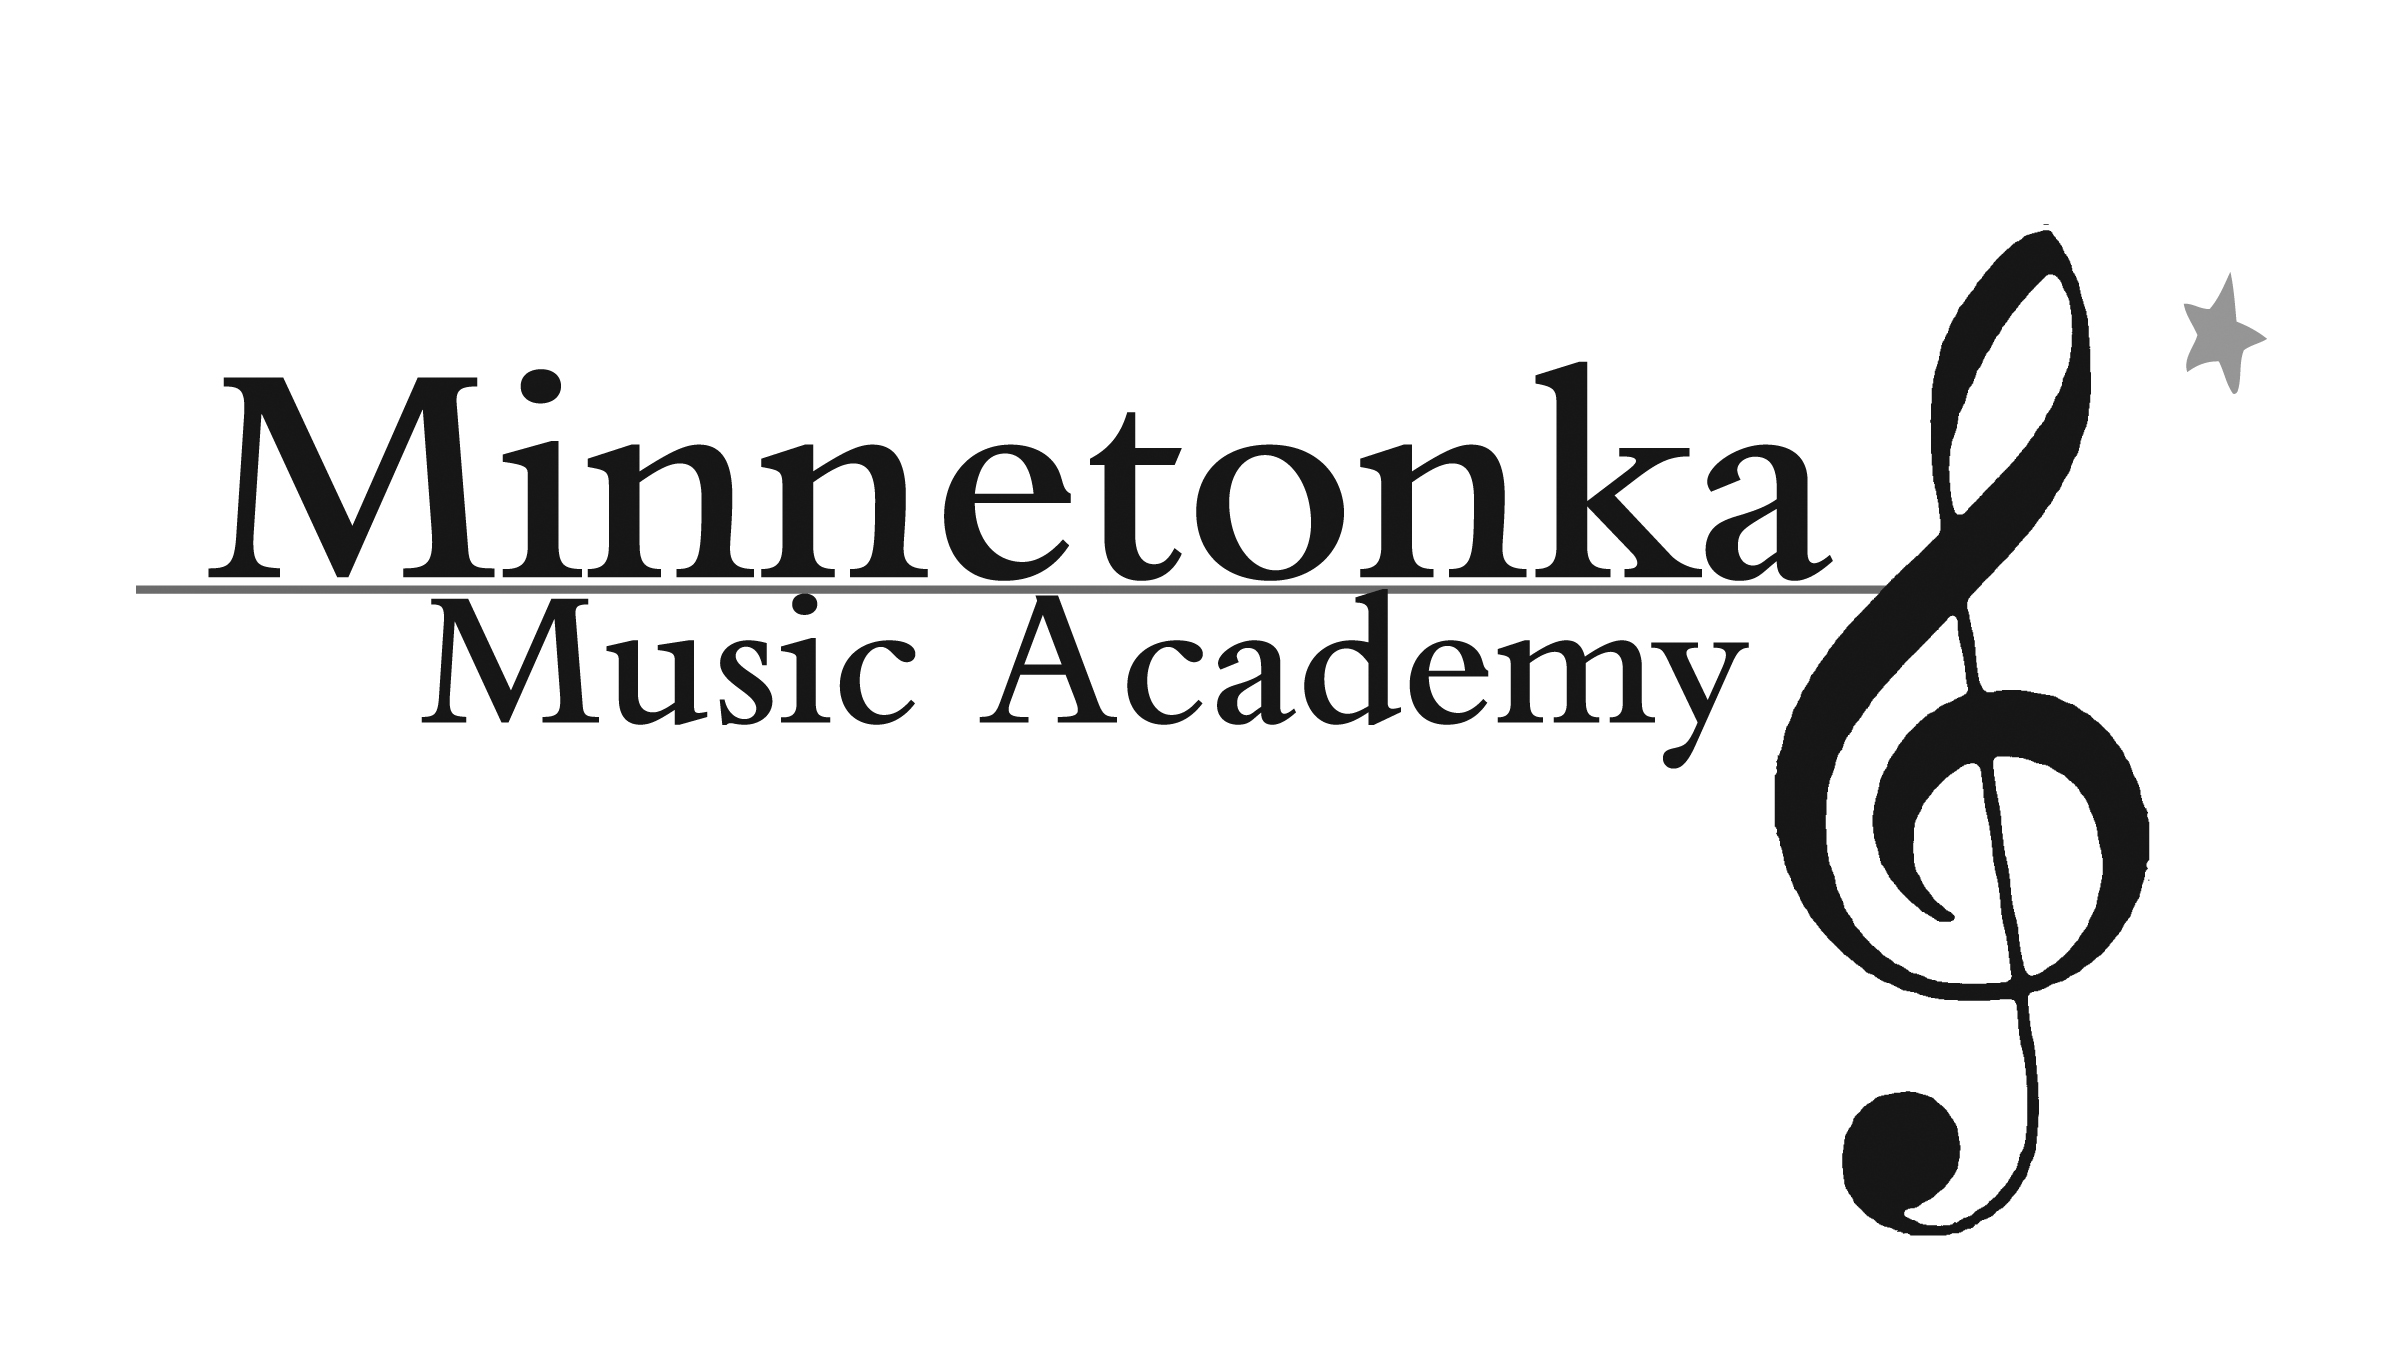 Музична академія міннетонка